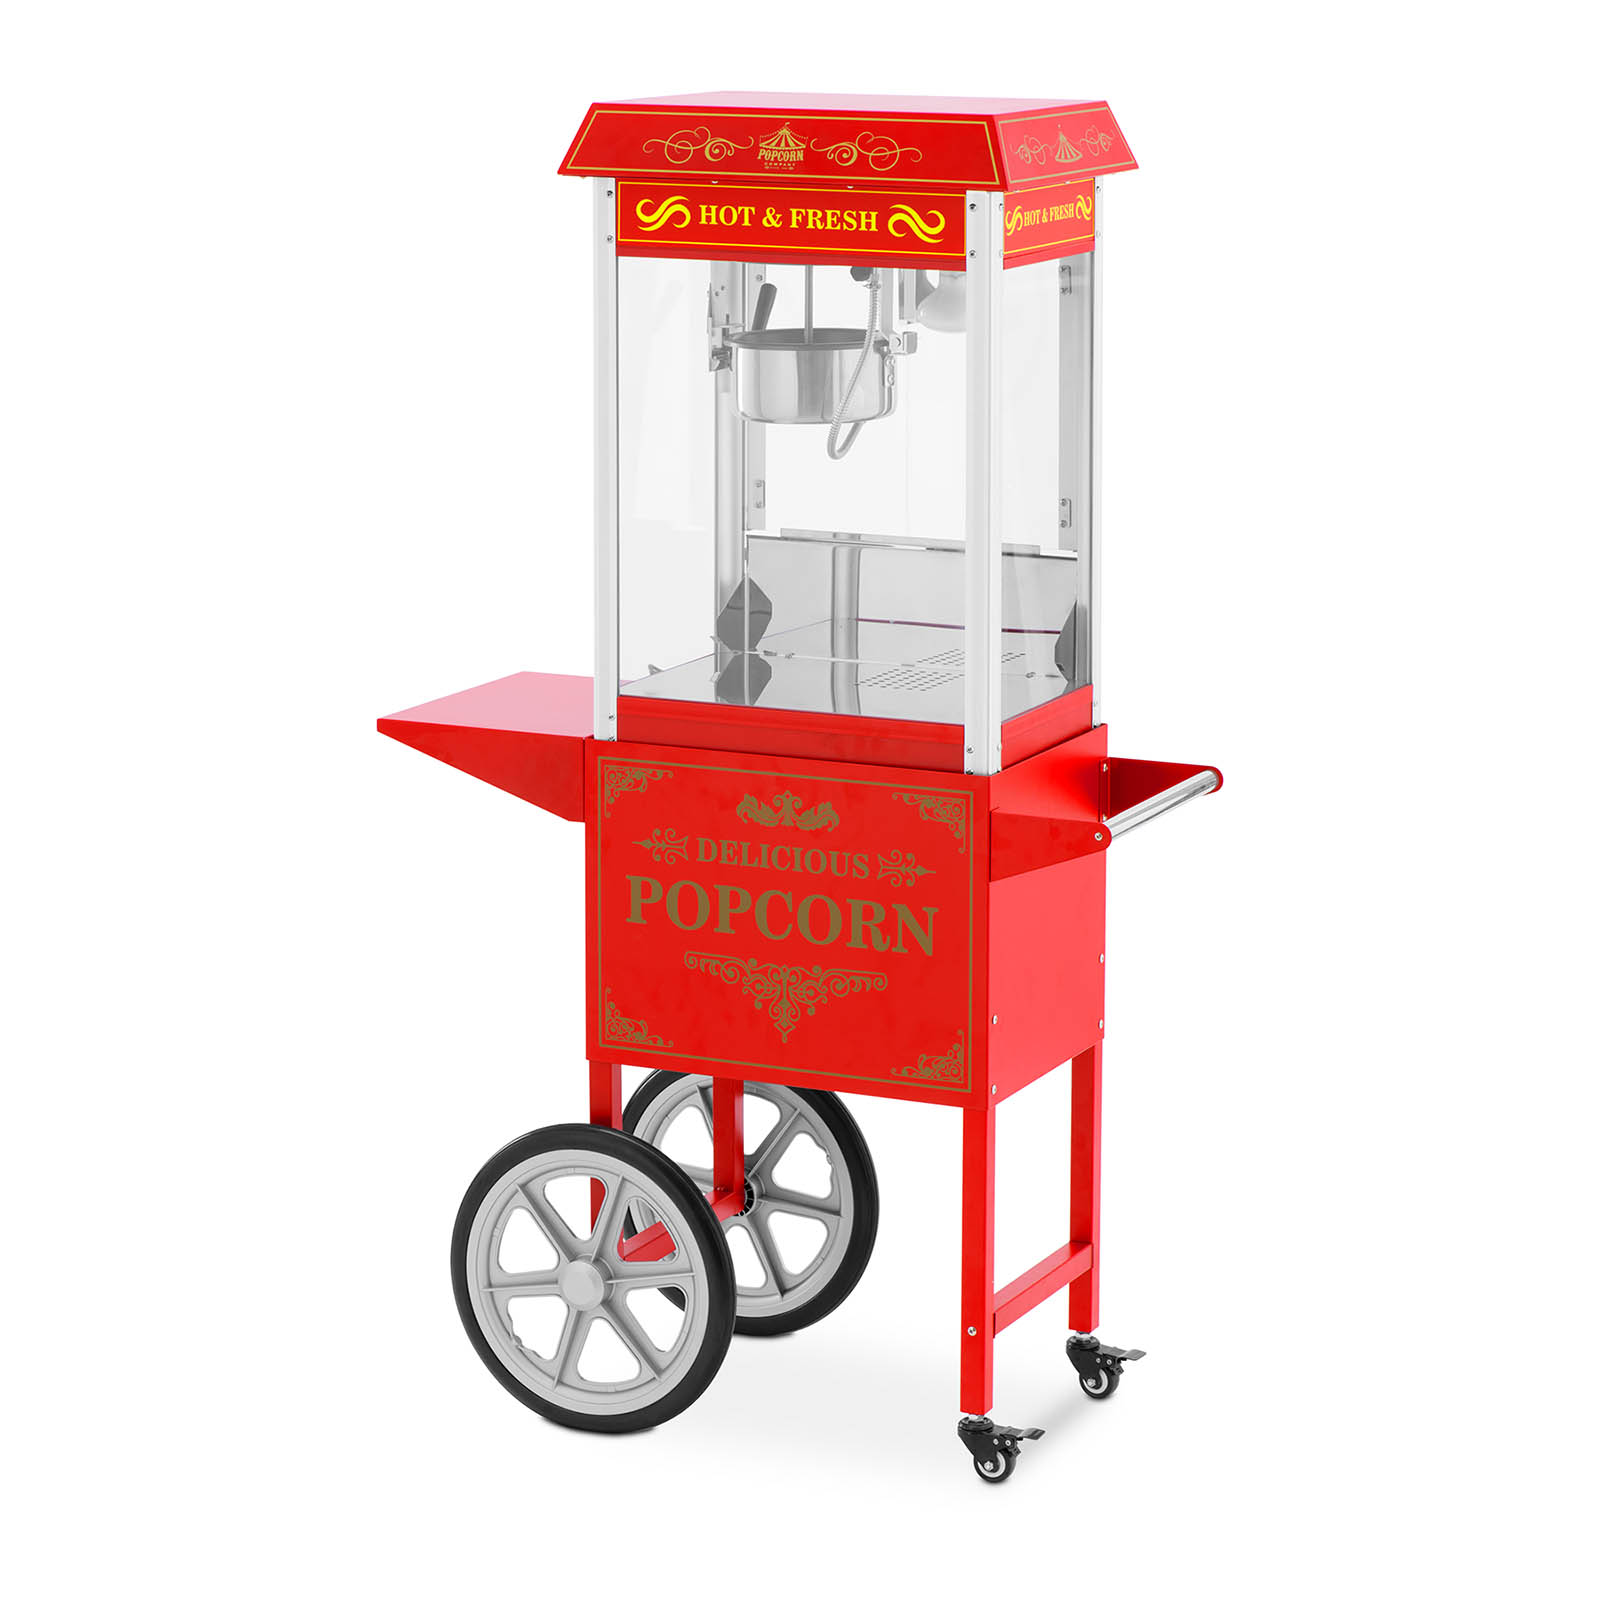 Maszyna do popcornu z wózkiem - design retro - 150/180°C - czerwona - Royal Catering